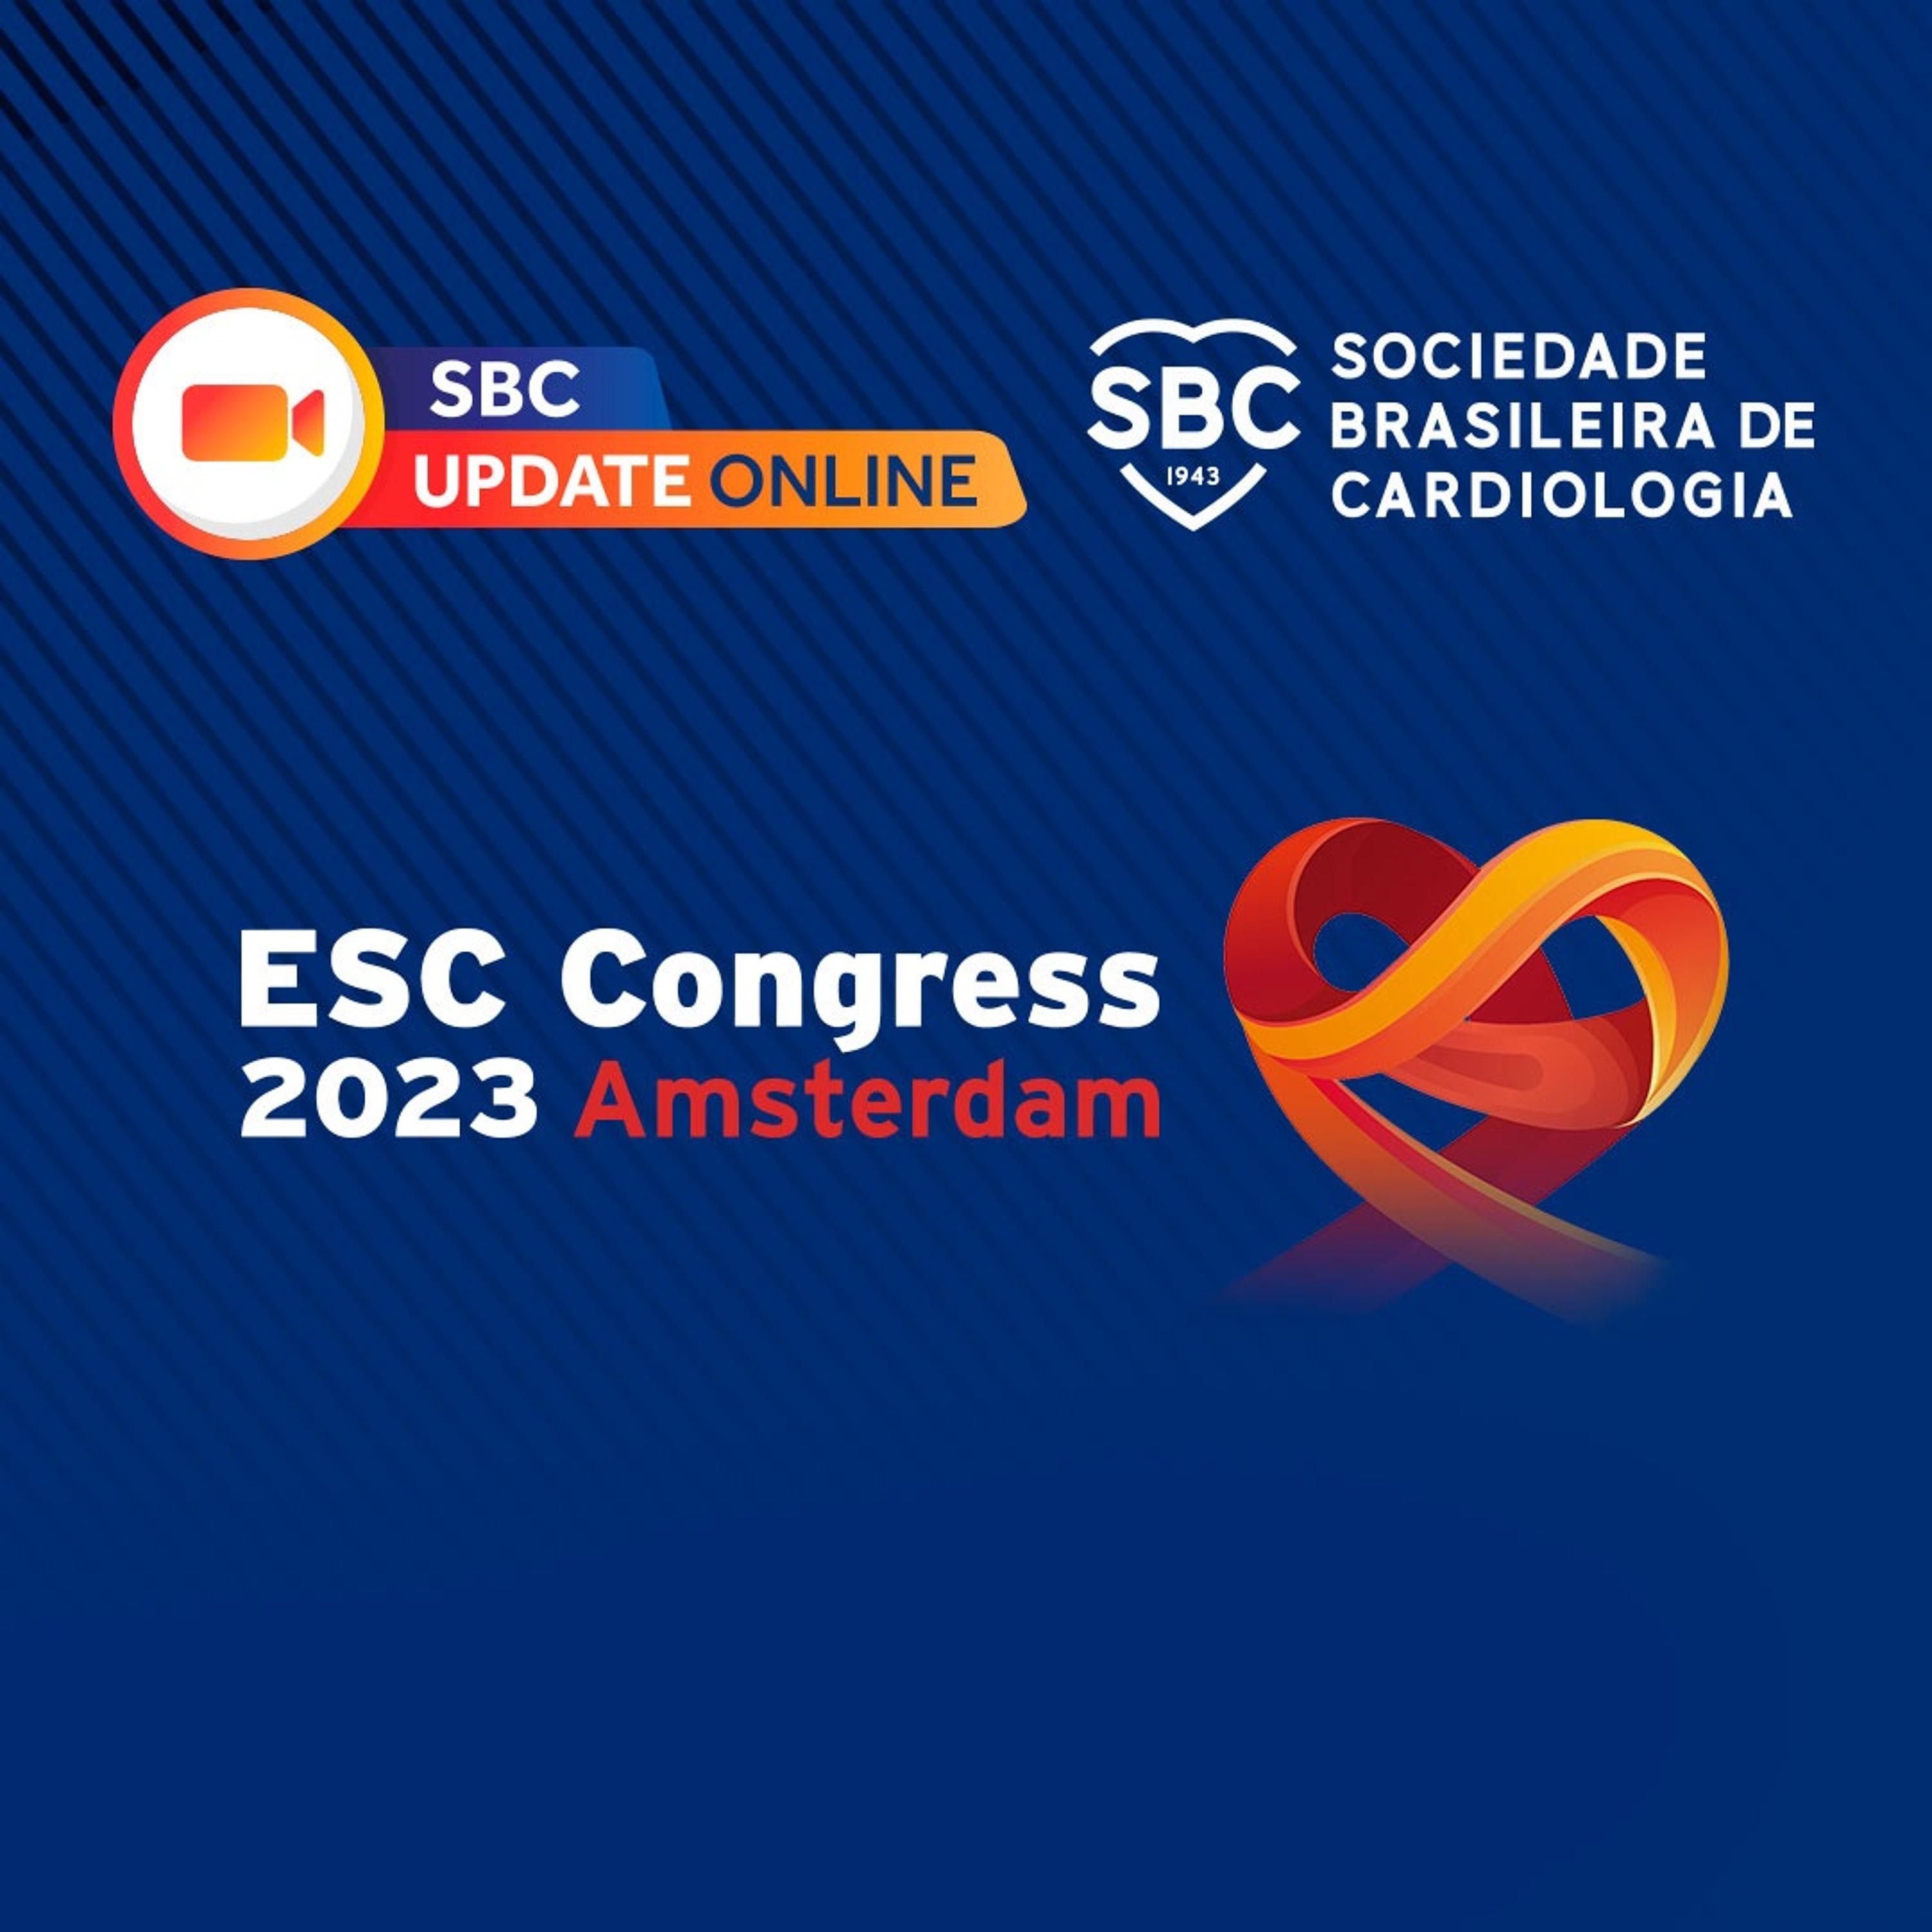 Ouça a live realizada no primeiro dia do congresso europeu de cardiologia 2023, trazendo as principais novidades do momento na cardiologia.